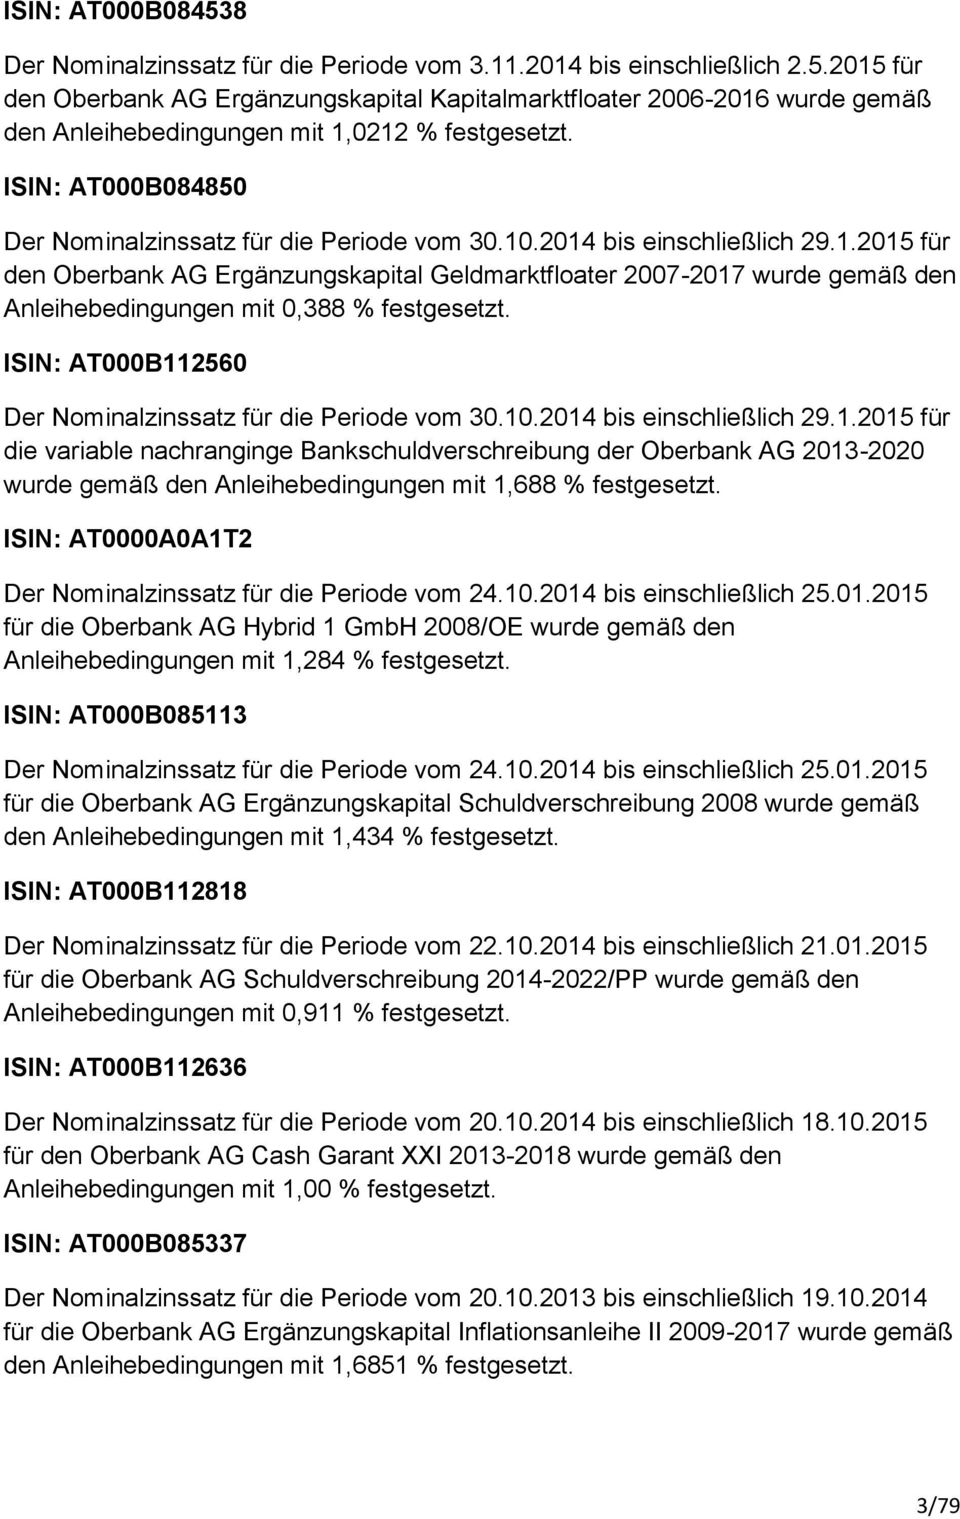 ISIN: AT000B112560 Der Nominalzinssatz für die Periode vom 30.10.2014 bis einschließlich 29.1.2015 für die variable nachranginge Bankschuldverschreibung der Oberbank AG 2013-2020 wurde gemäß den Anleihebedingungen mit 1,688 % festgesetzt.